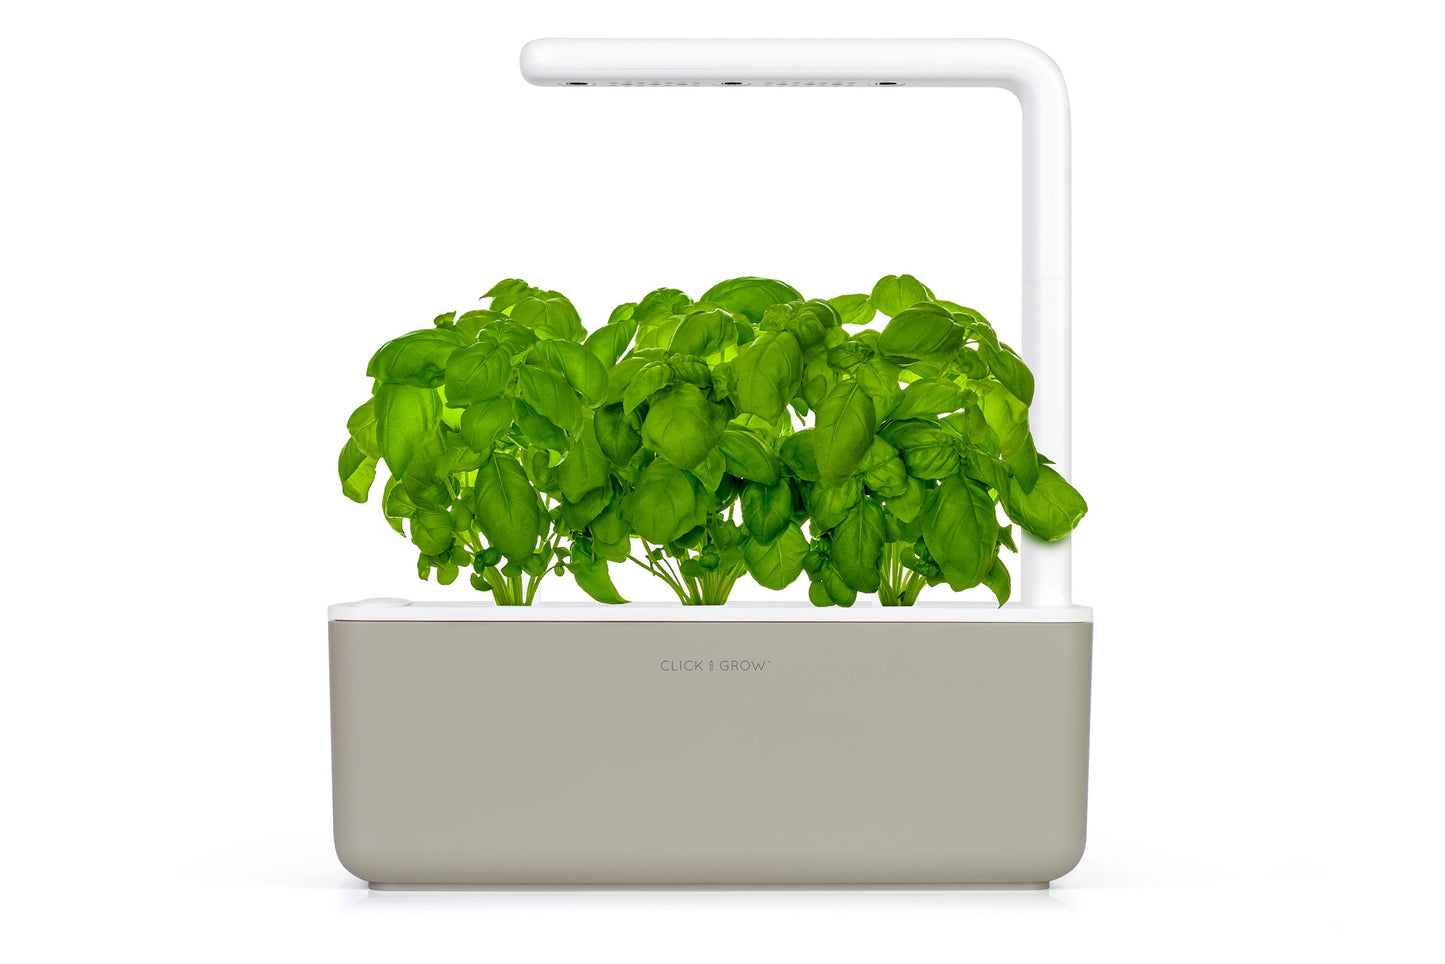 smart-garden-3-smartgarden-clickandgrow-click-and-grow